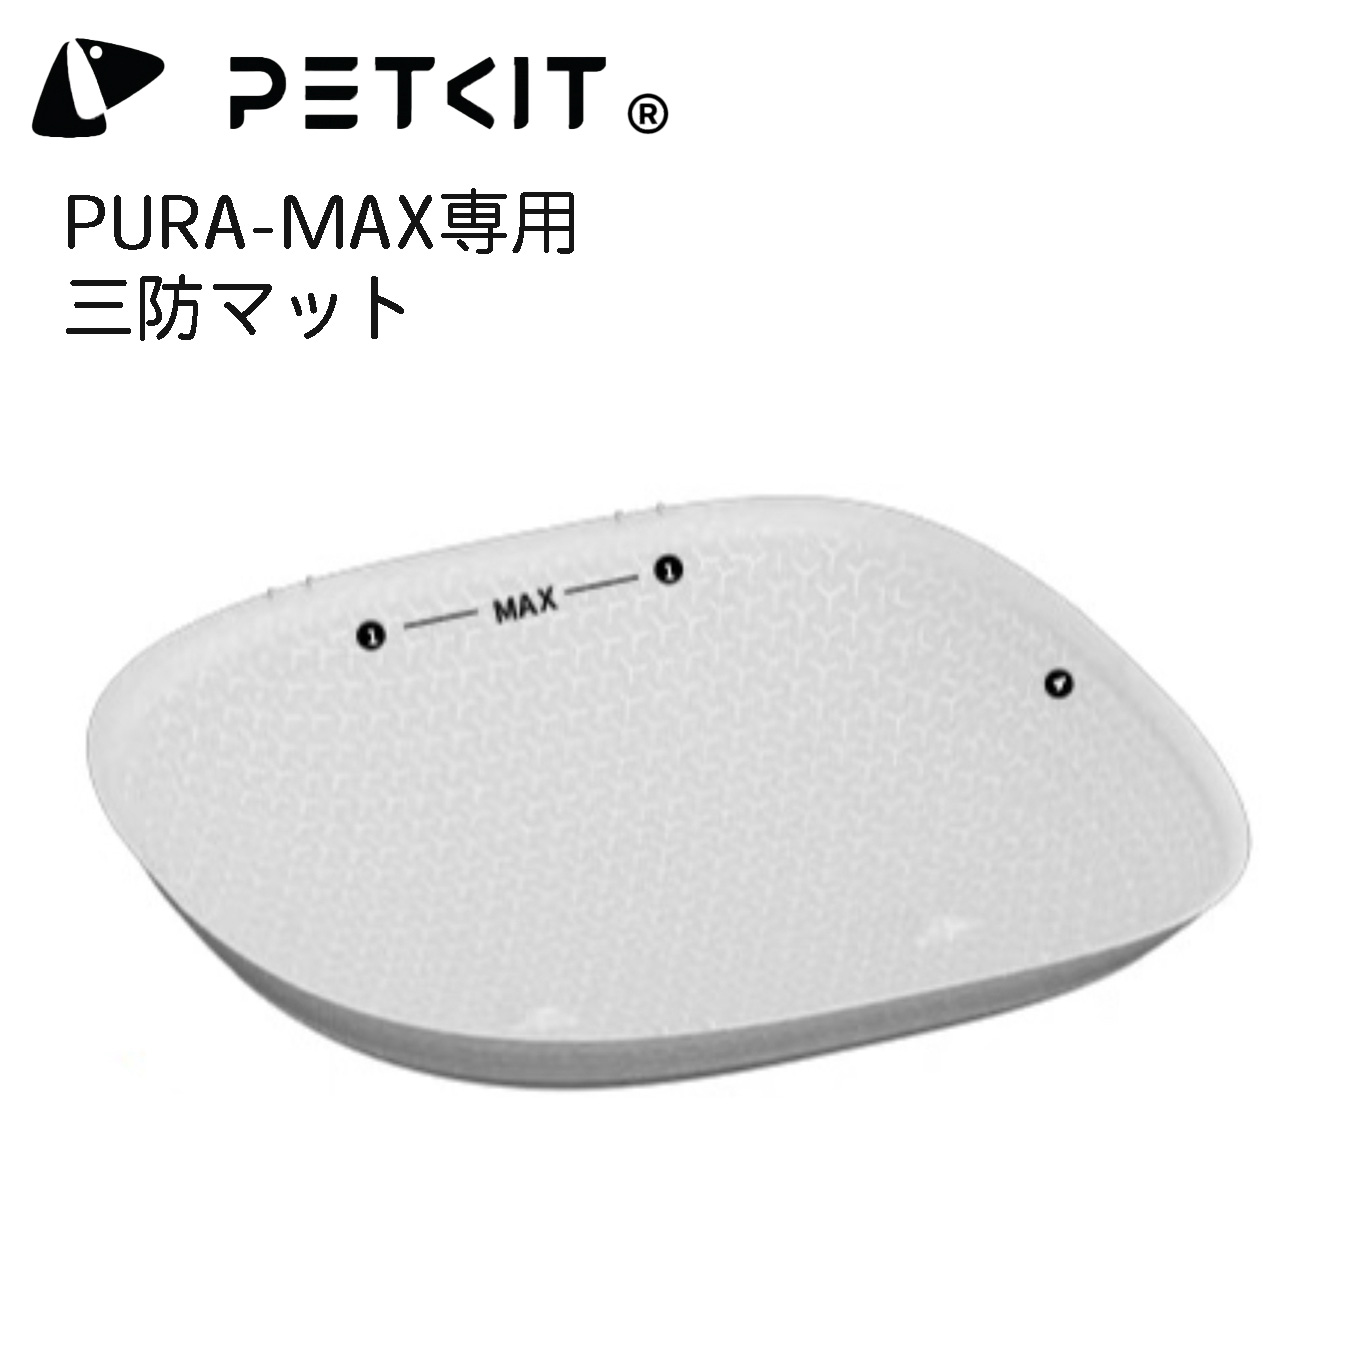 PETKIT-PURA-MAX】三防マット オックスフォードマット 自動ネコトイレ